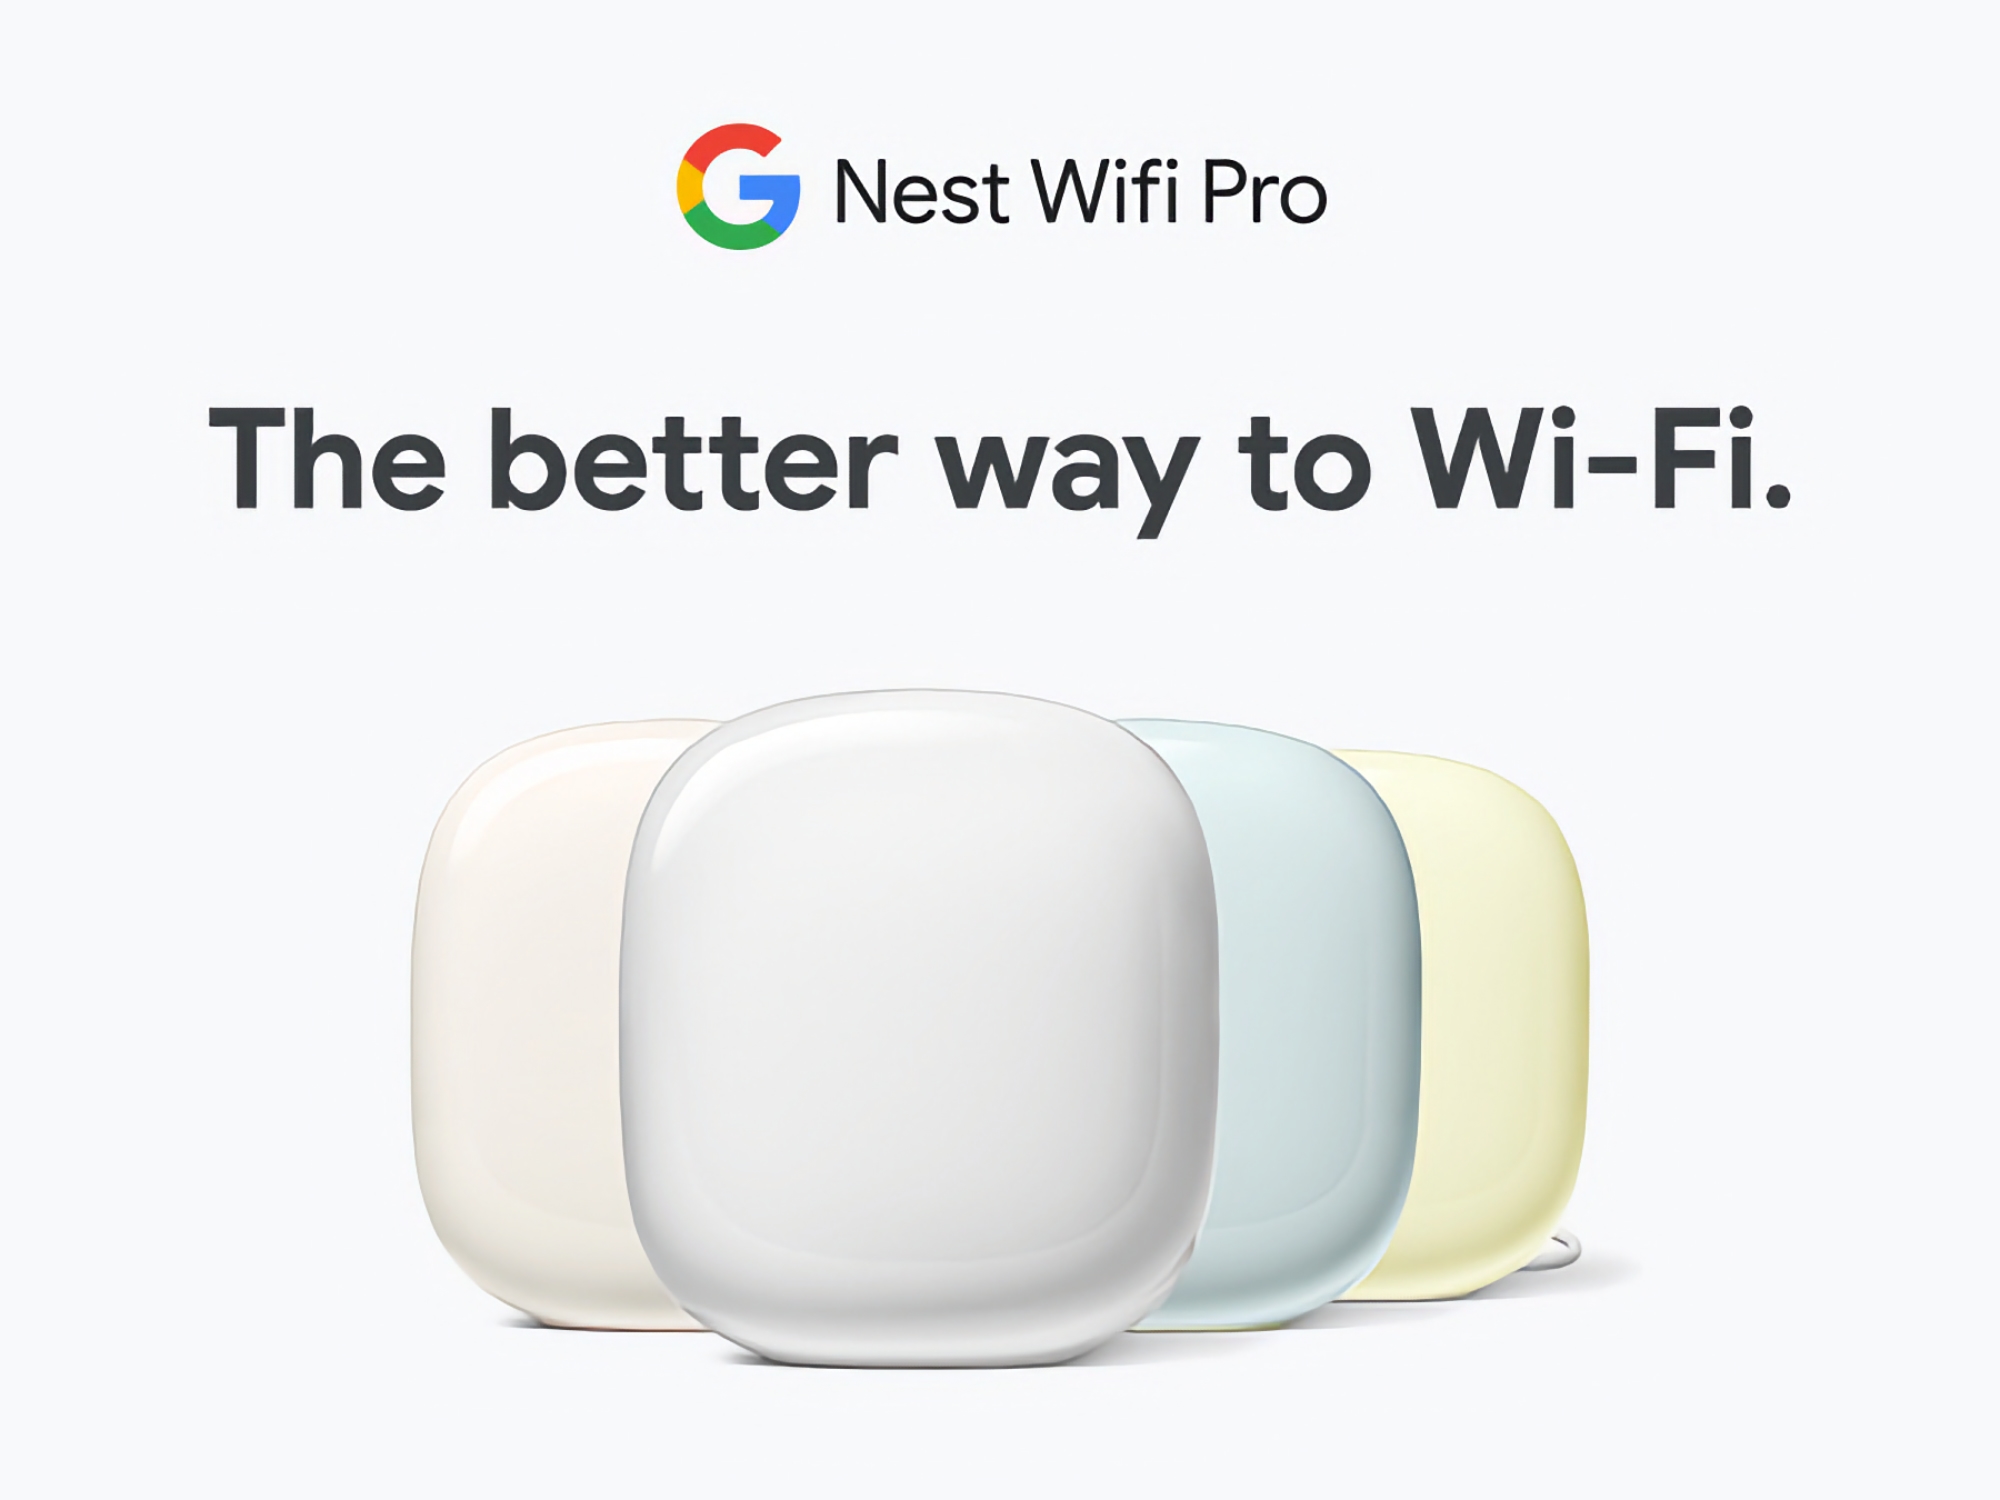 Google Nest WiFi Pro avec prise en charge de trois bandes et du Wi-Fi 6E est disponible sur Amazon avec une remise allant jusqu'à 60